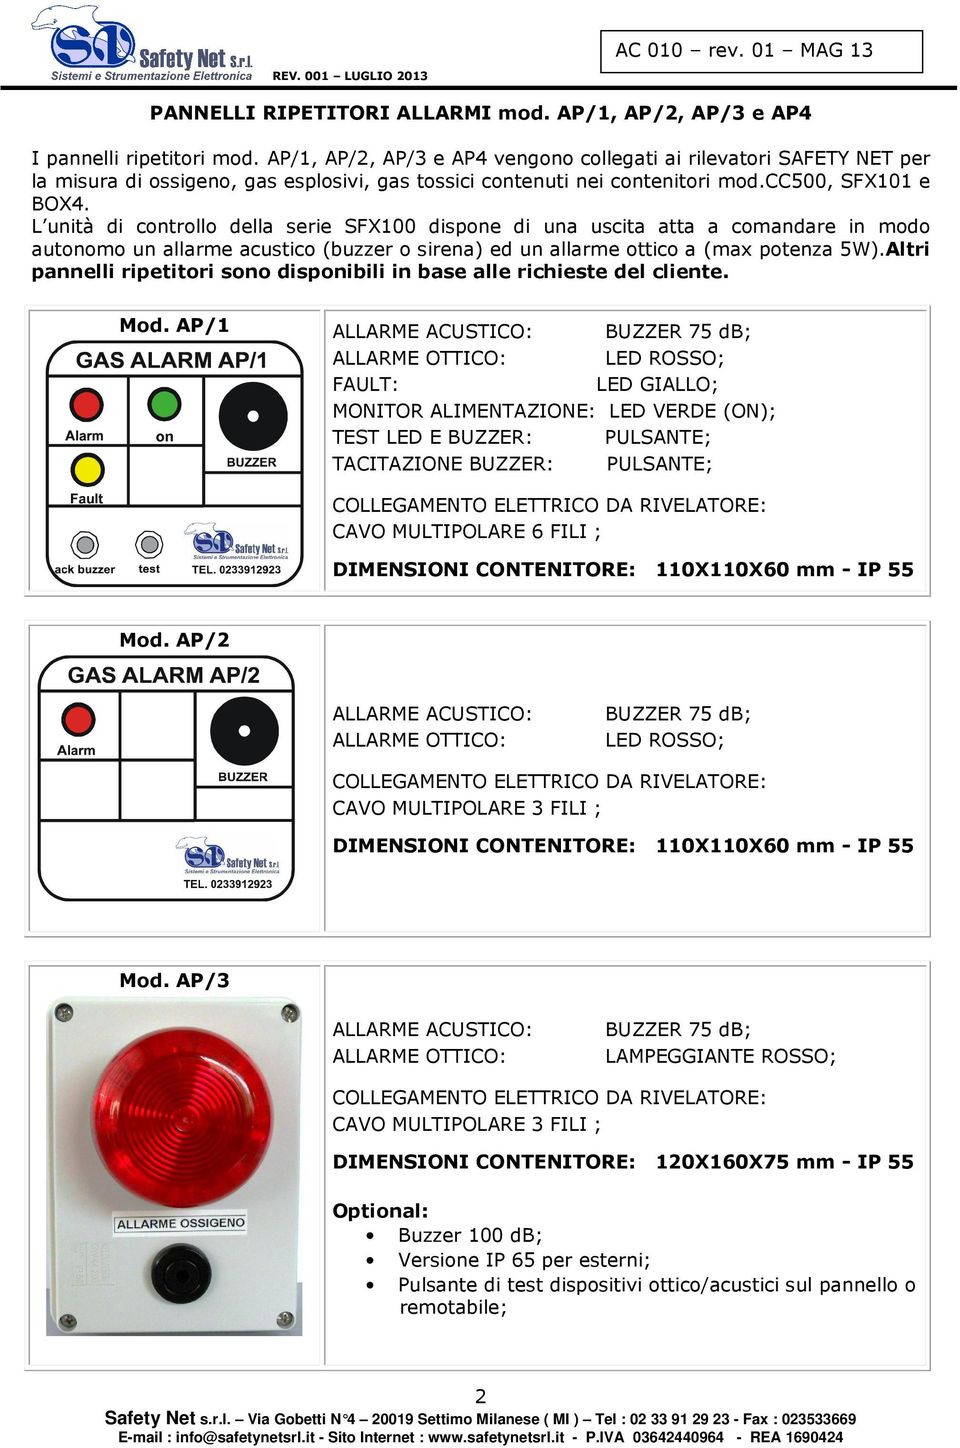 L unità di controllo della serie SFX100 dispone di una uscita atta a comandare in modo autonomo un allarme acustico (buzzer o sirena) ed un allarme ottico a (max potenza 5W).